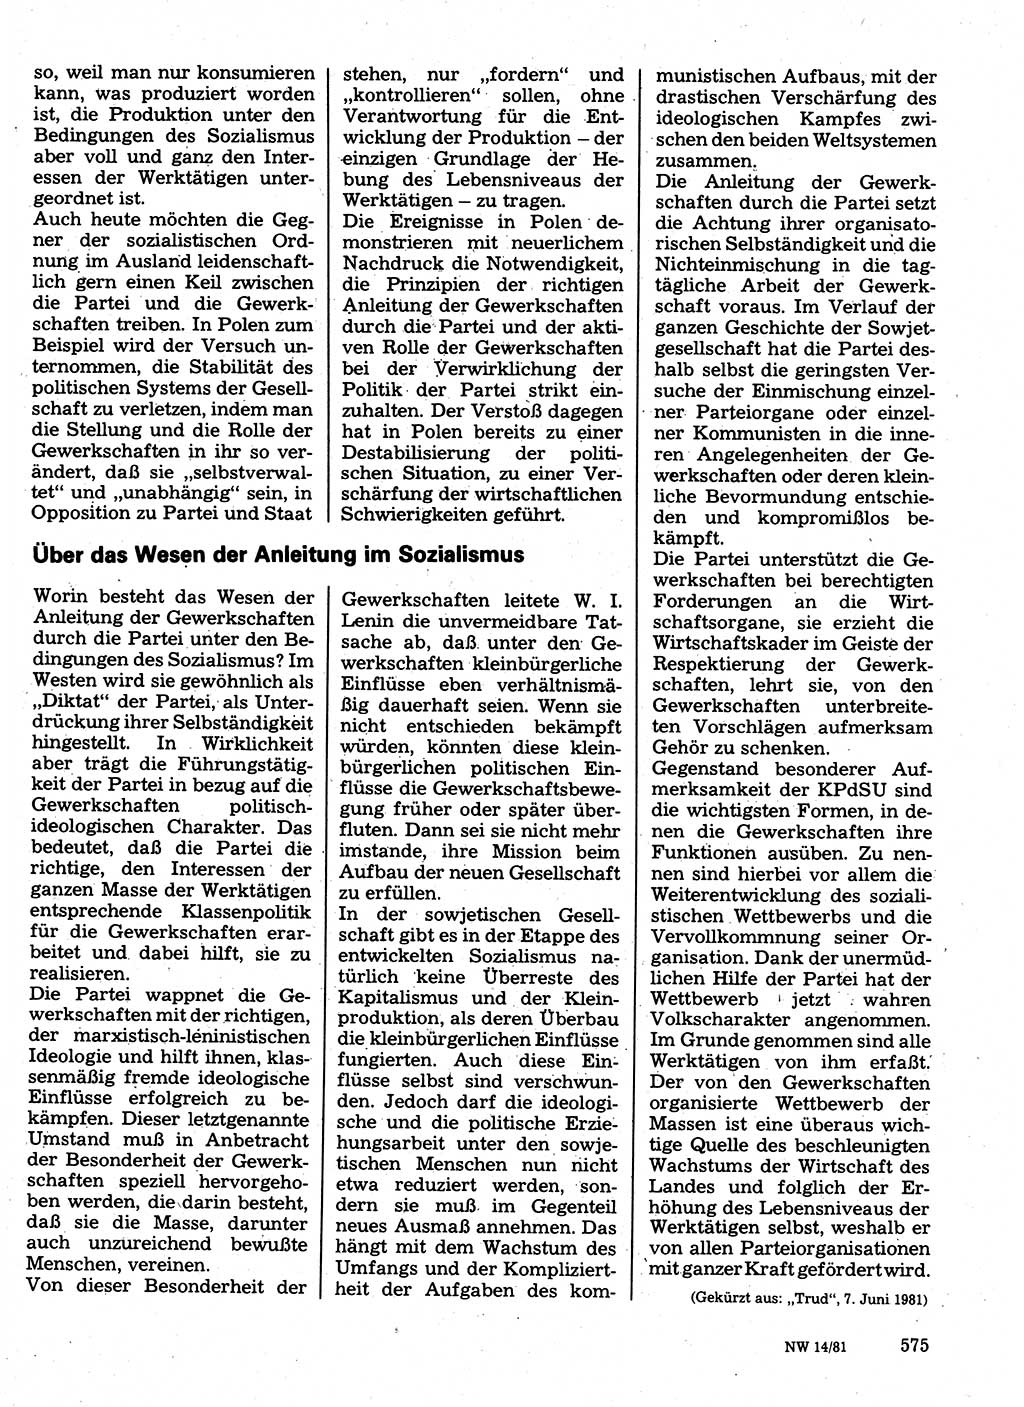 Neuer Weg (NW), Organ des Zentralkomitees (ZK) der SED (Sozialistische Einheitspartei Deutschlands) für Fragen des Parteilebens, 36. Jahrgang [Deutsche Demokratische Republik (DDR)] 1981, Seite 575 (NW ZK SED DDR 1981, S. 575)